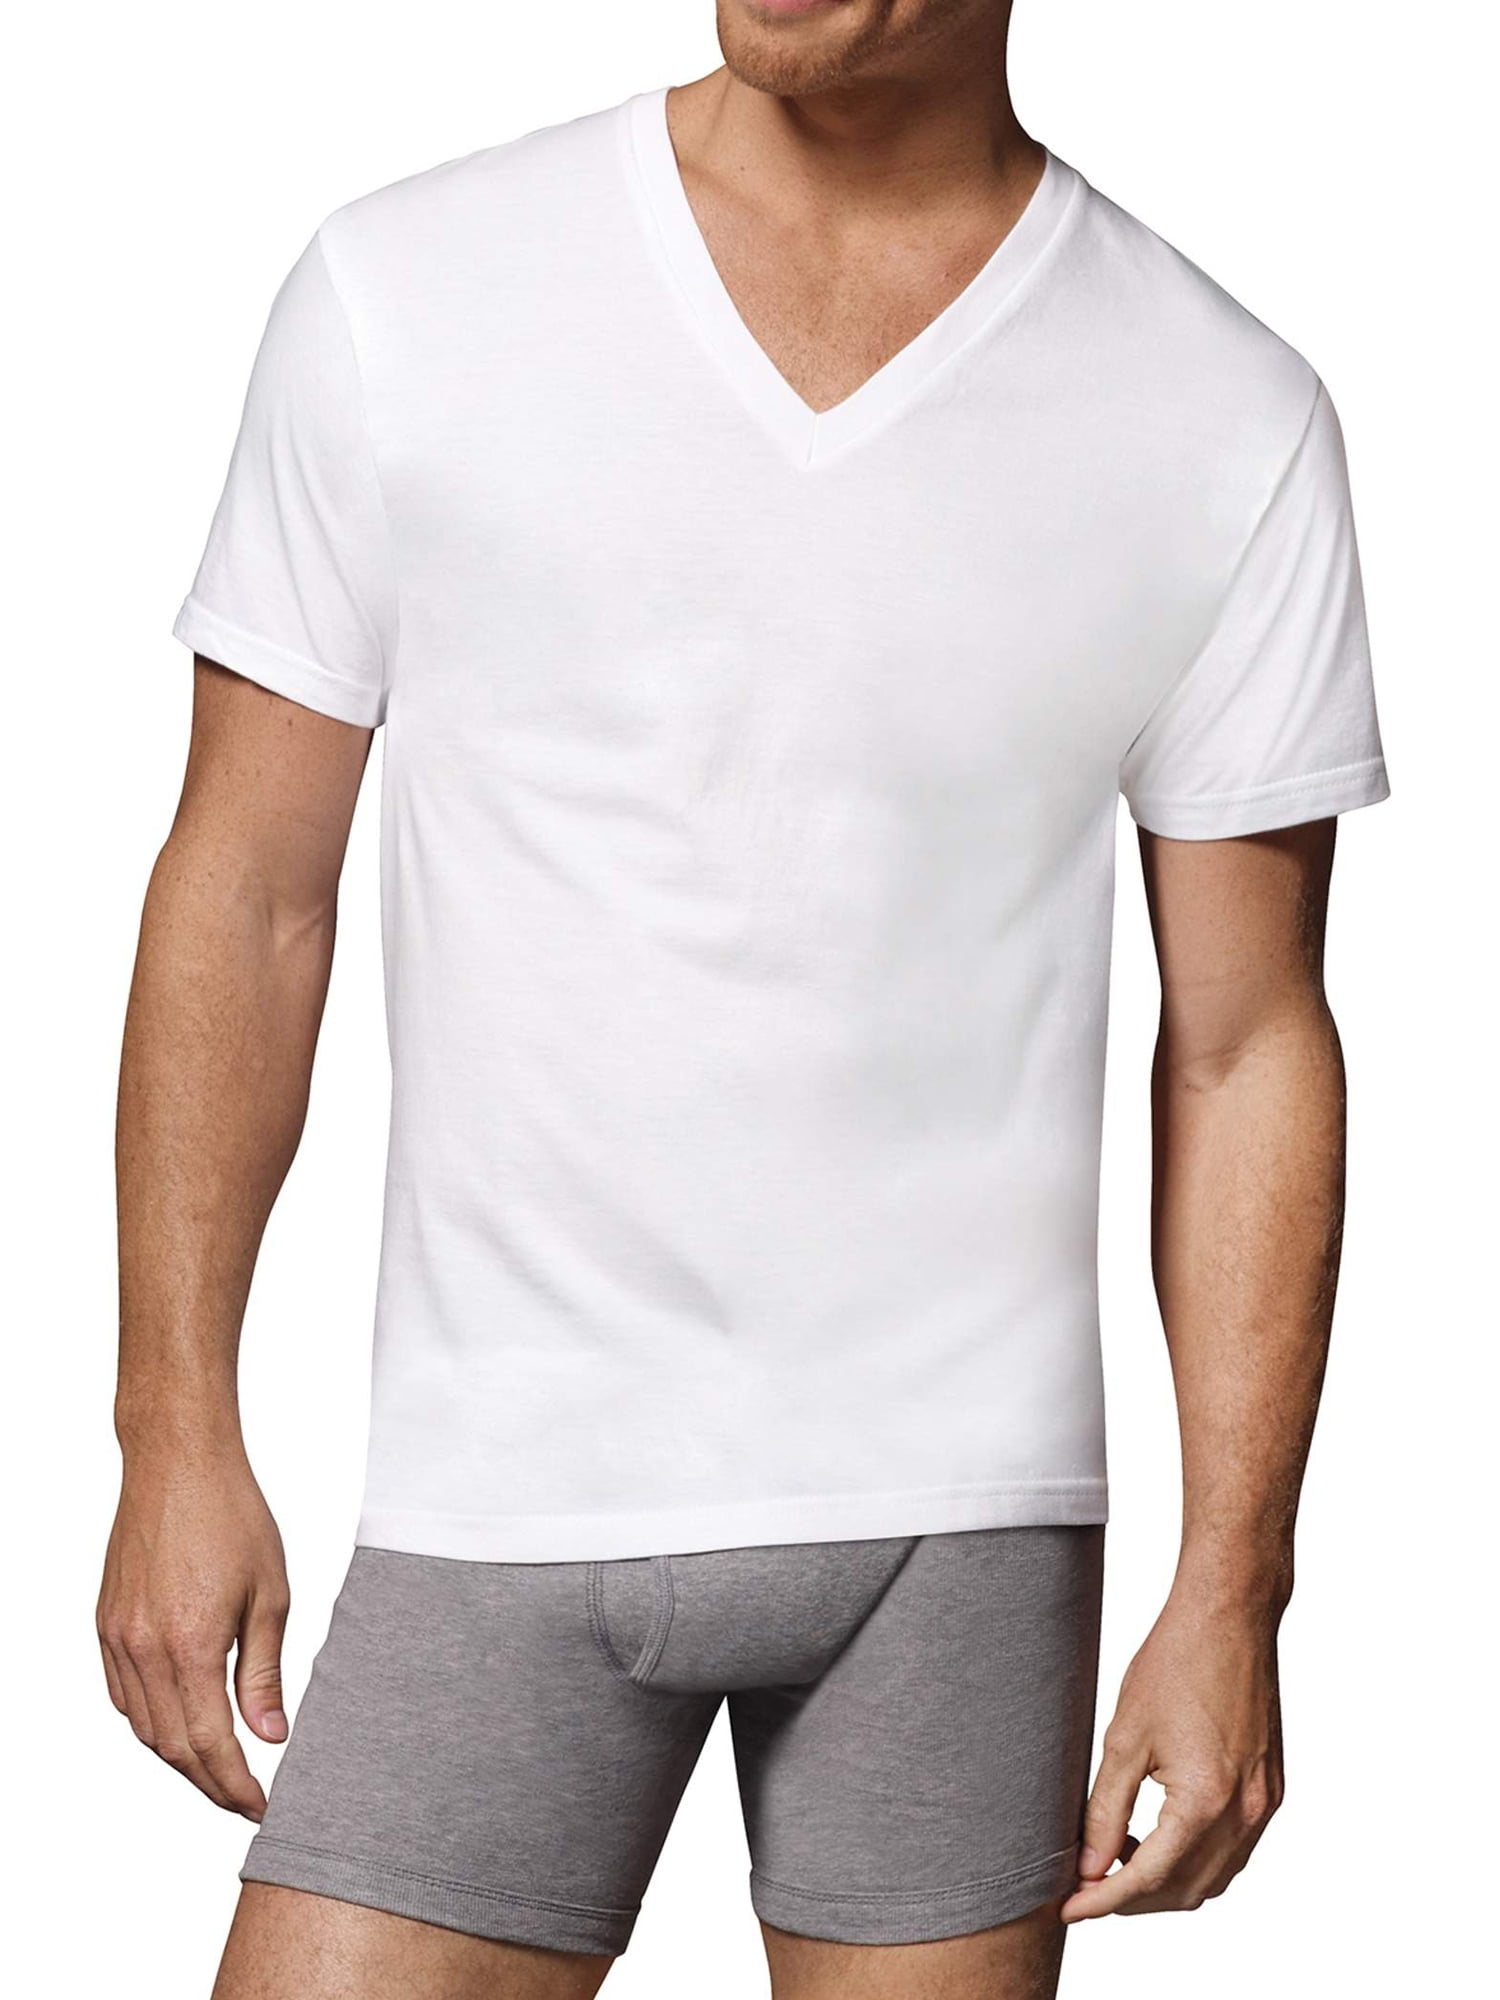 Hanes Men's FreshIQ Comfortsoft White V-Neck T-Shirts, 6 Pack